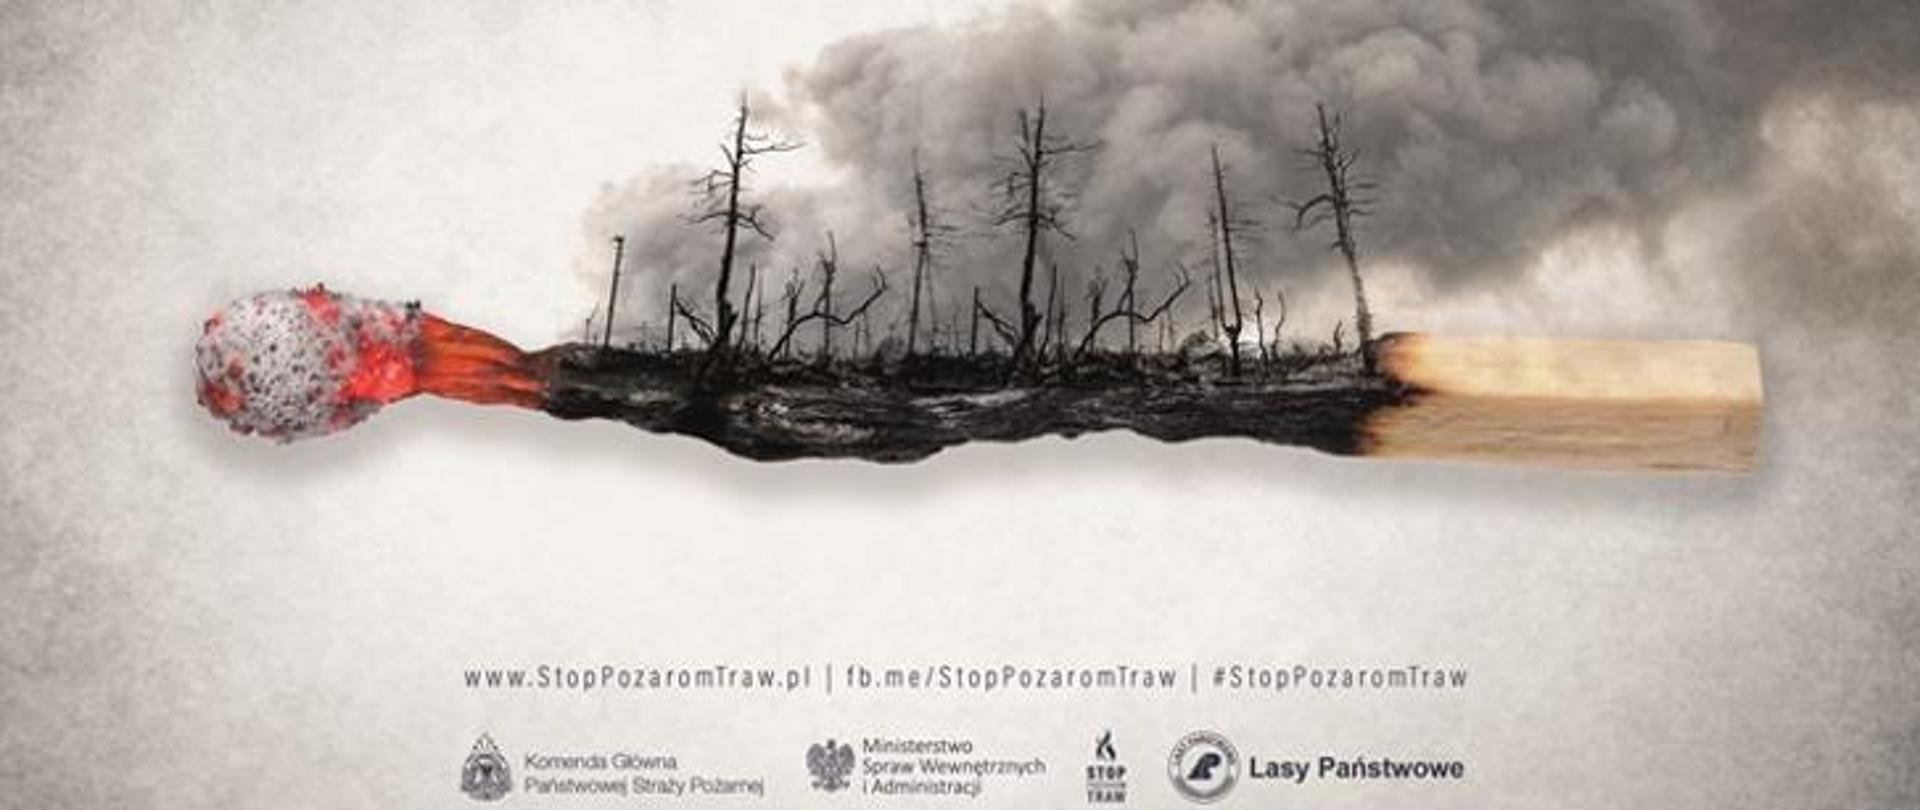 Grafika przedstawia zapaloną zapałkę na której w części spalonej widać trawy i las po pożarze. Nad lasem unoszą się kłęby dymu. Cała grafika wykonana jest w szarych kolorach. 